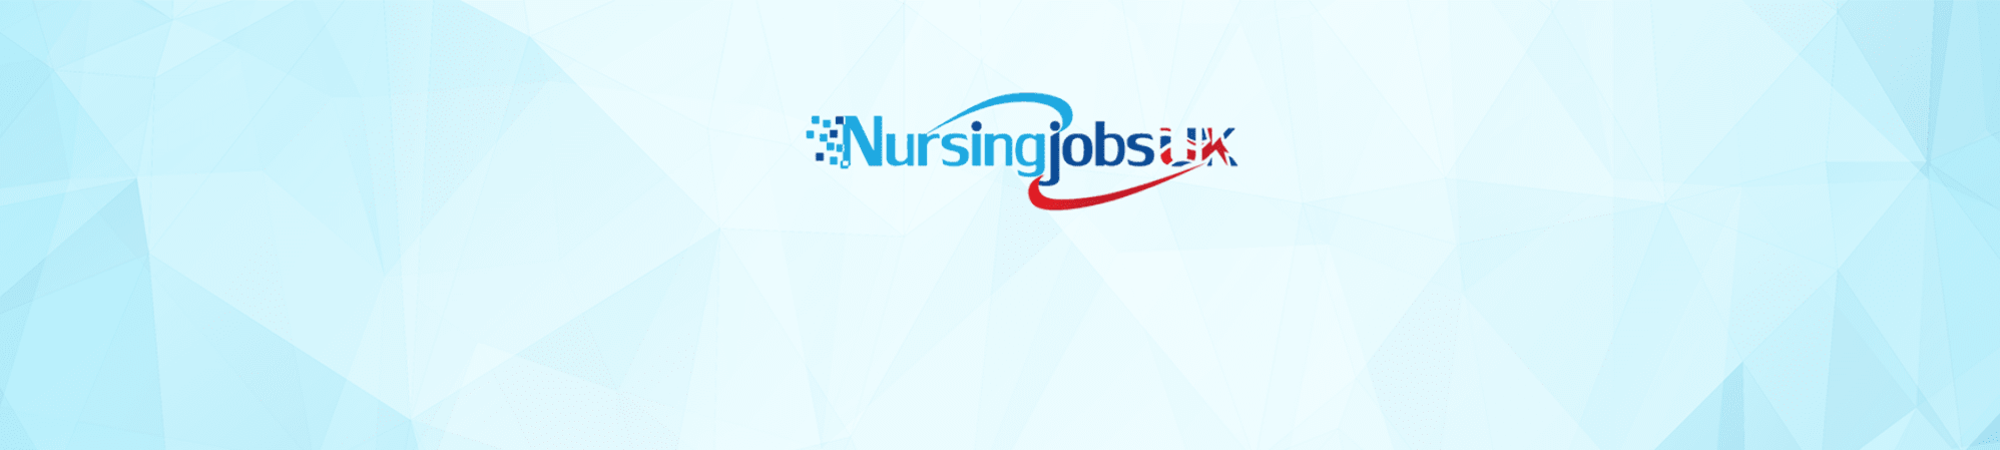 NursingjobsUK banner